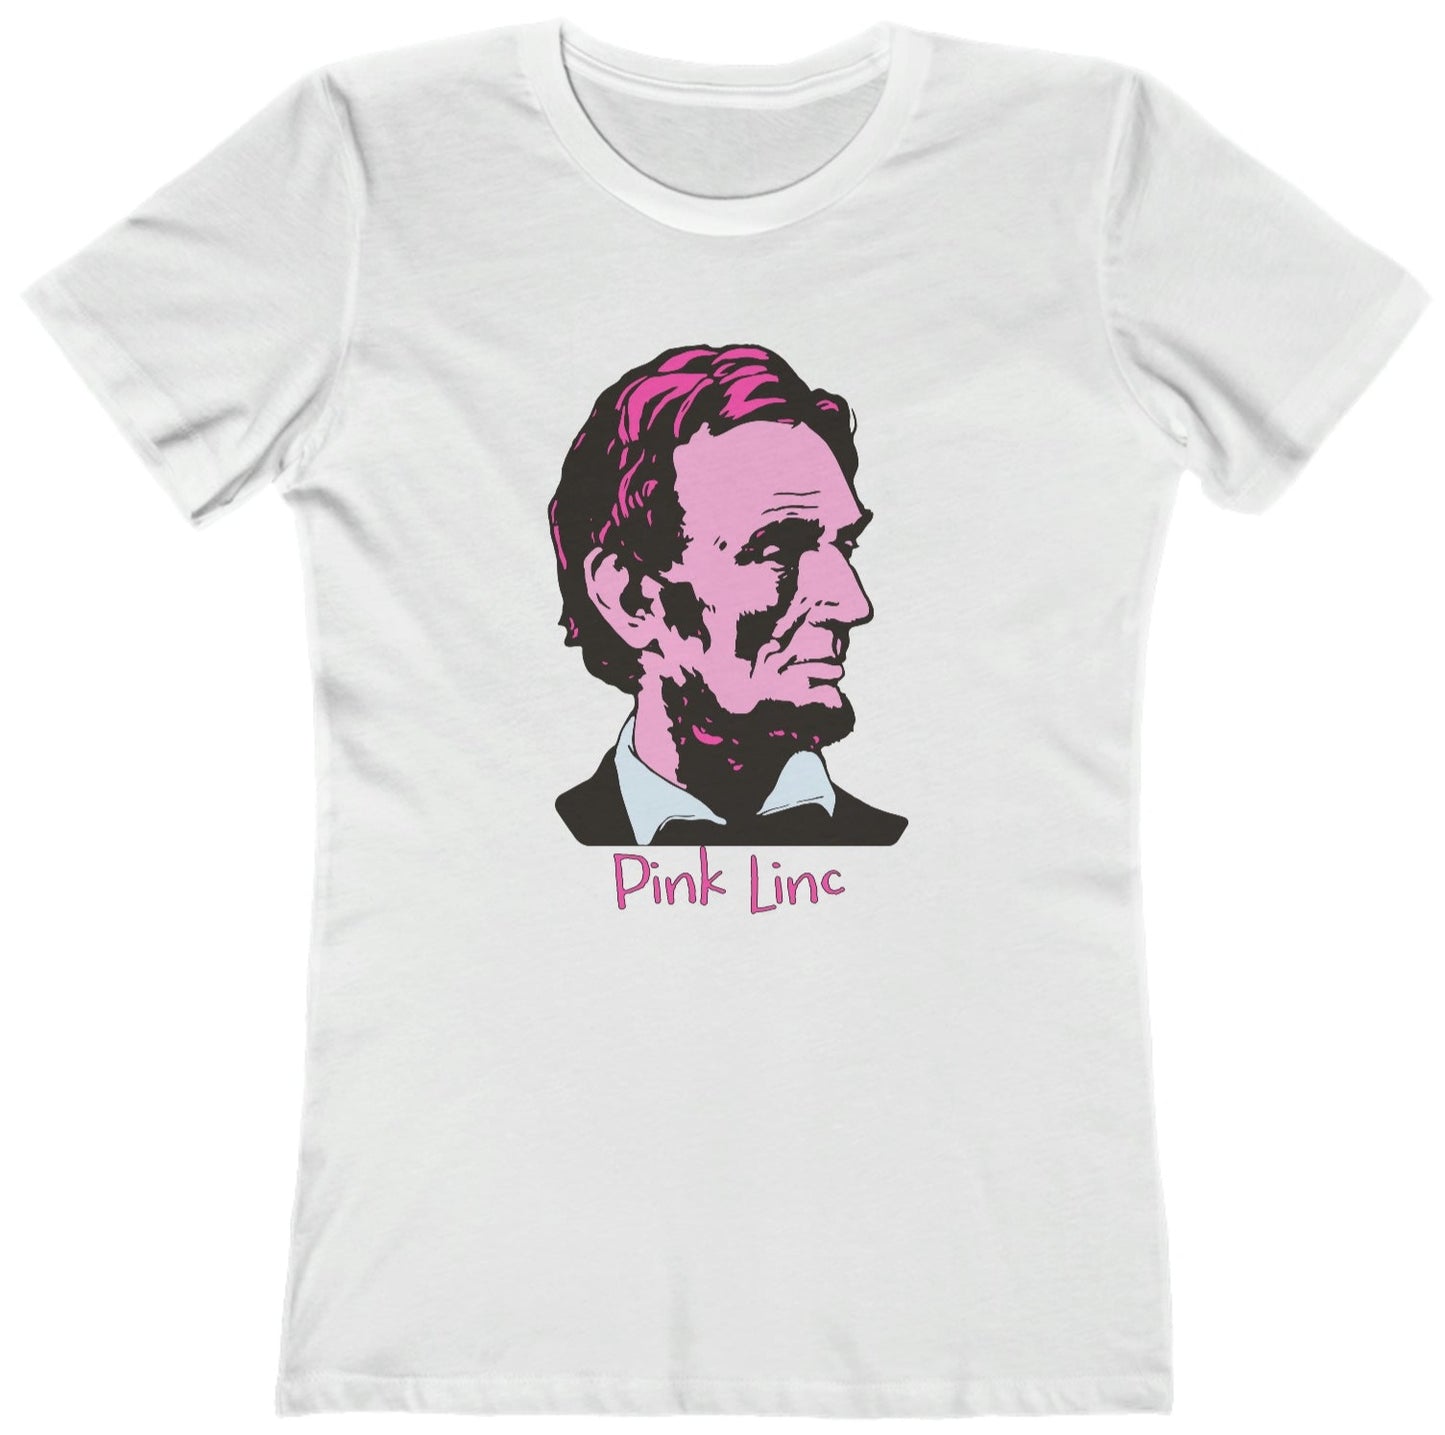 Pink Linc - Women's T-Shirt